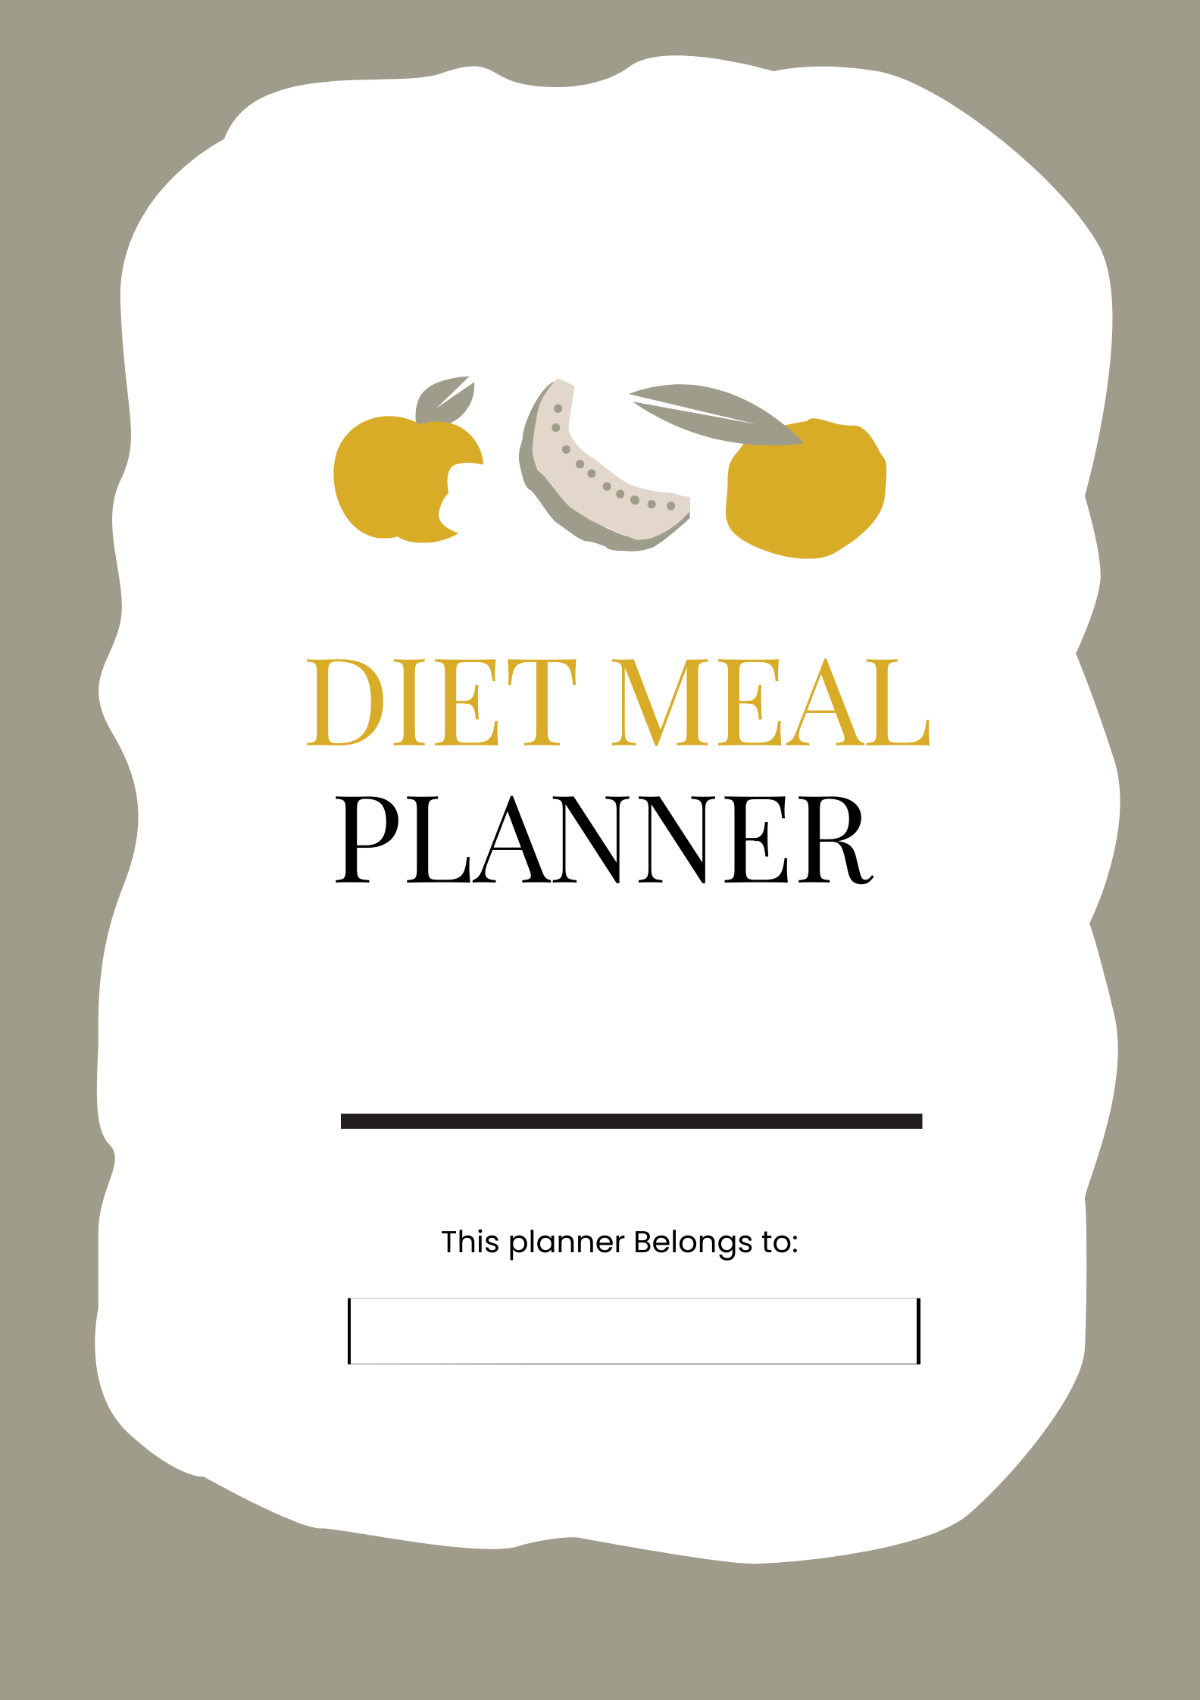 Diet Menu Planner Template